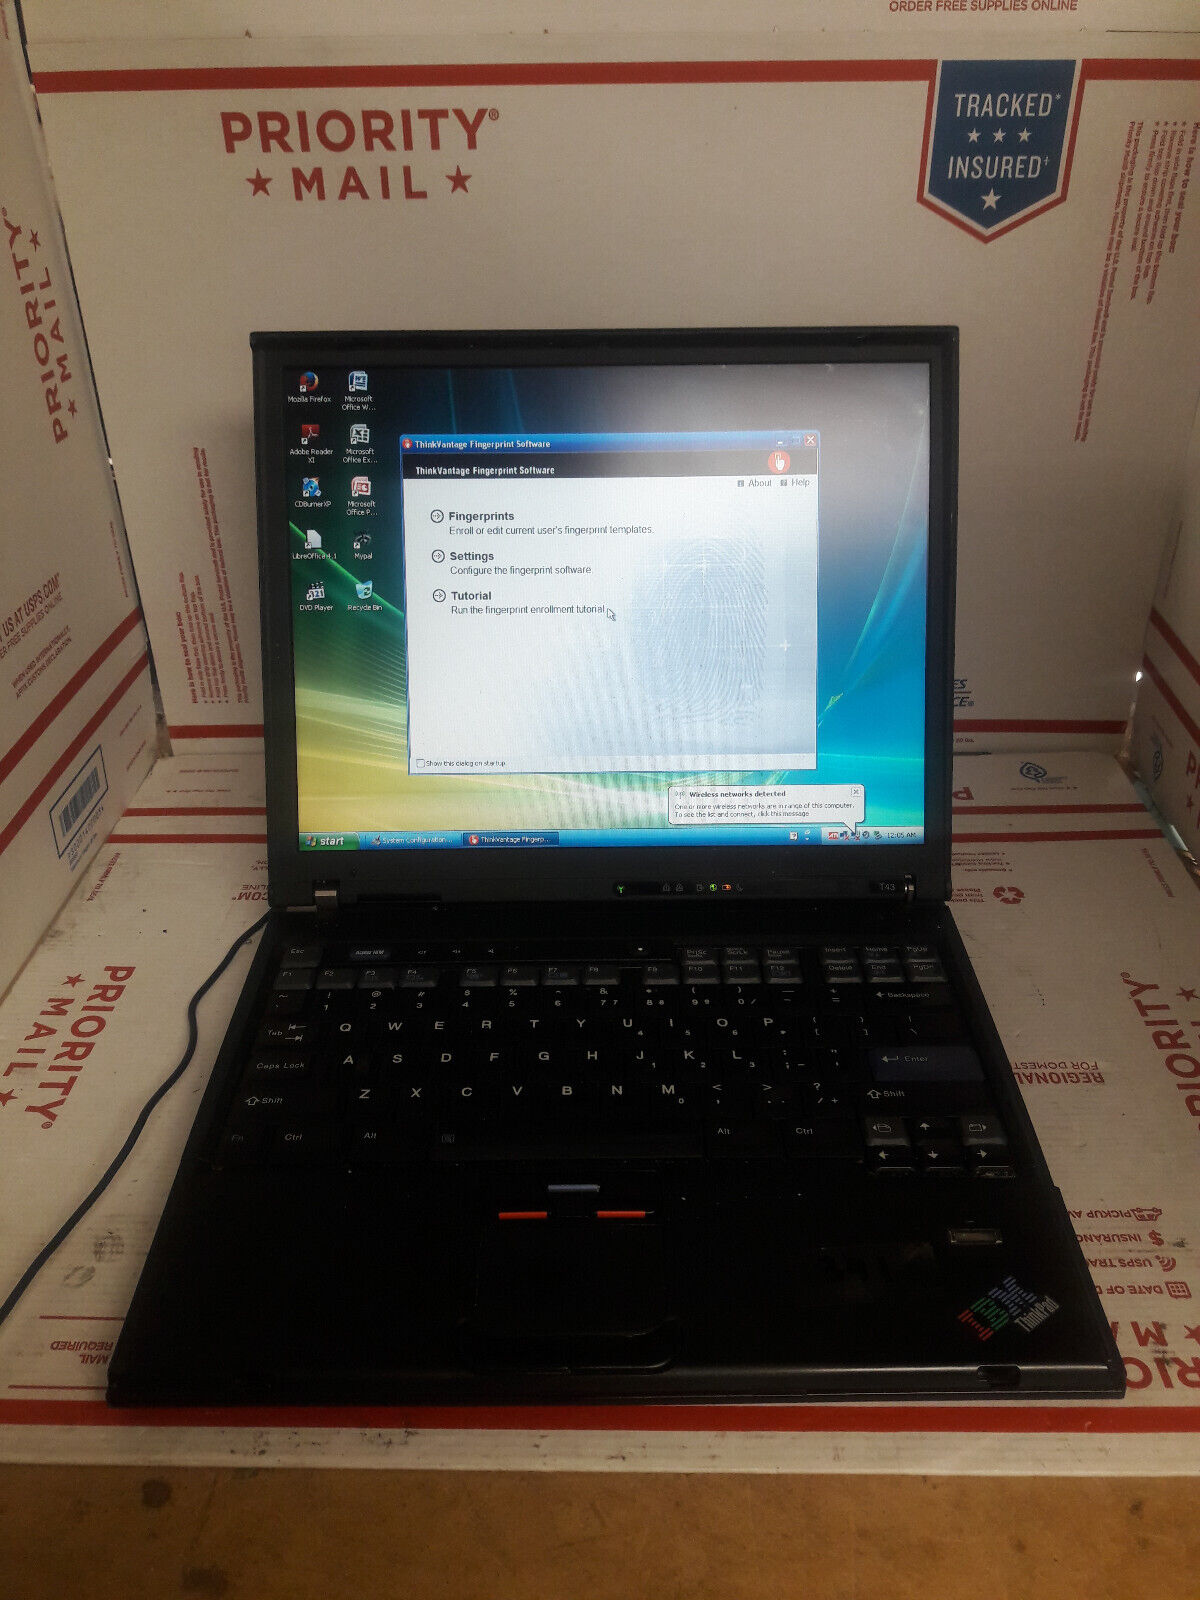 IBM ThinkPad T43 1.73Ghz 512MB RAM 160GB HDD Win XP Office Fingerprint #341